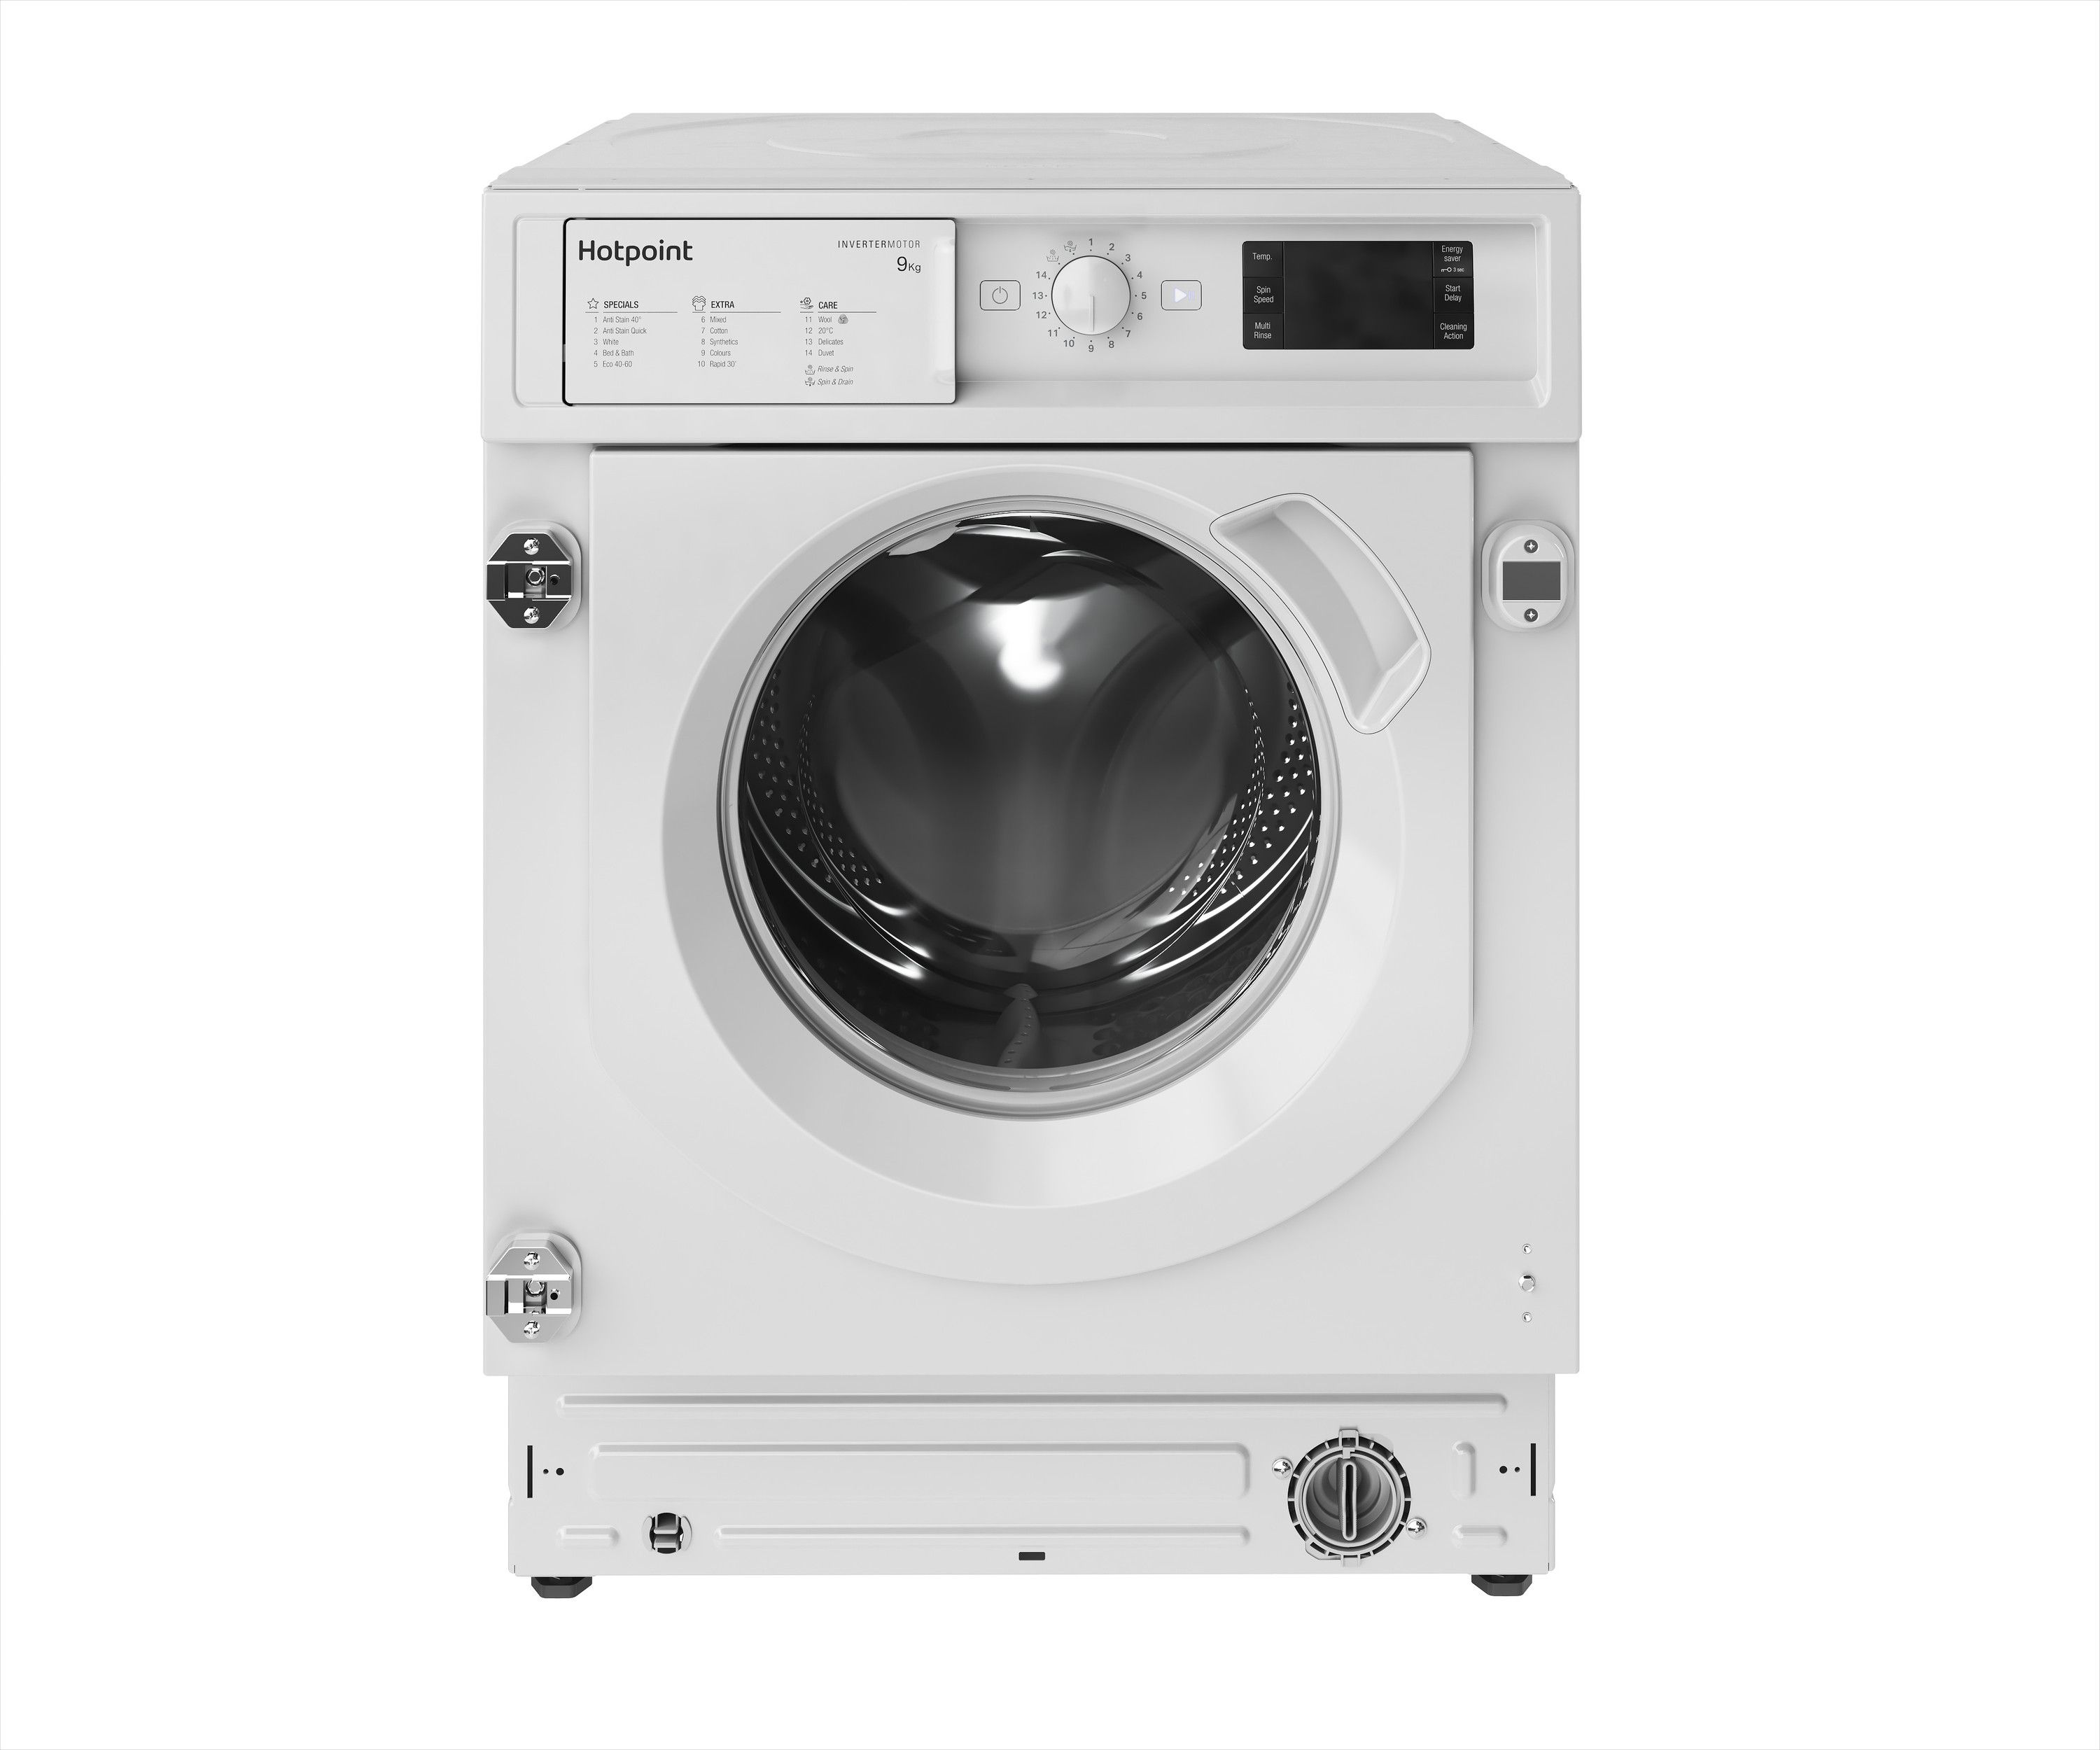 Hotpoint BIWMHG91485UK Integrated 9kg Washing Machine with 1400 rpm - White - B Rated, White